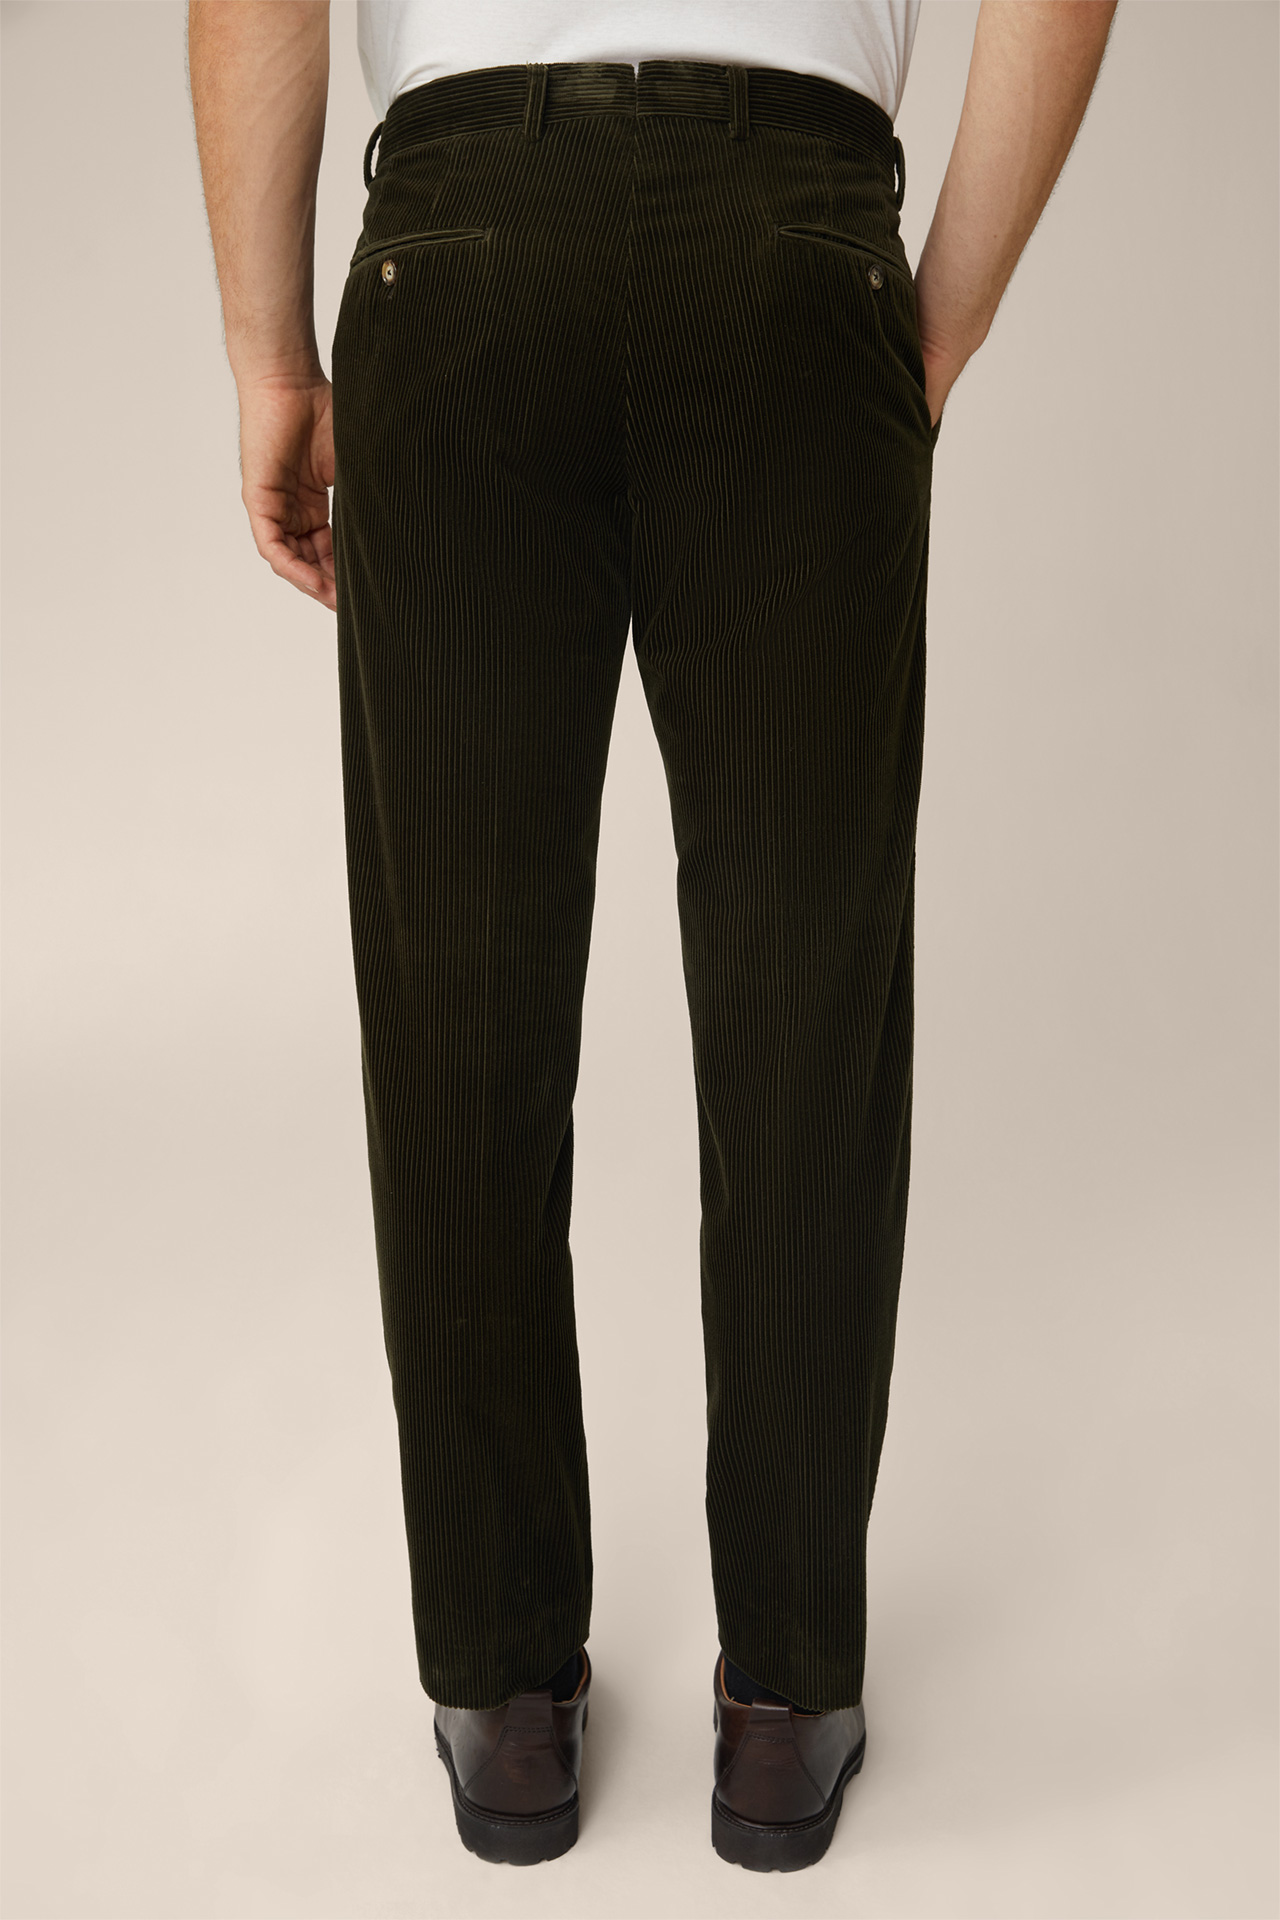 Pantalon en velours côtelé Santios, couleur olive